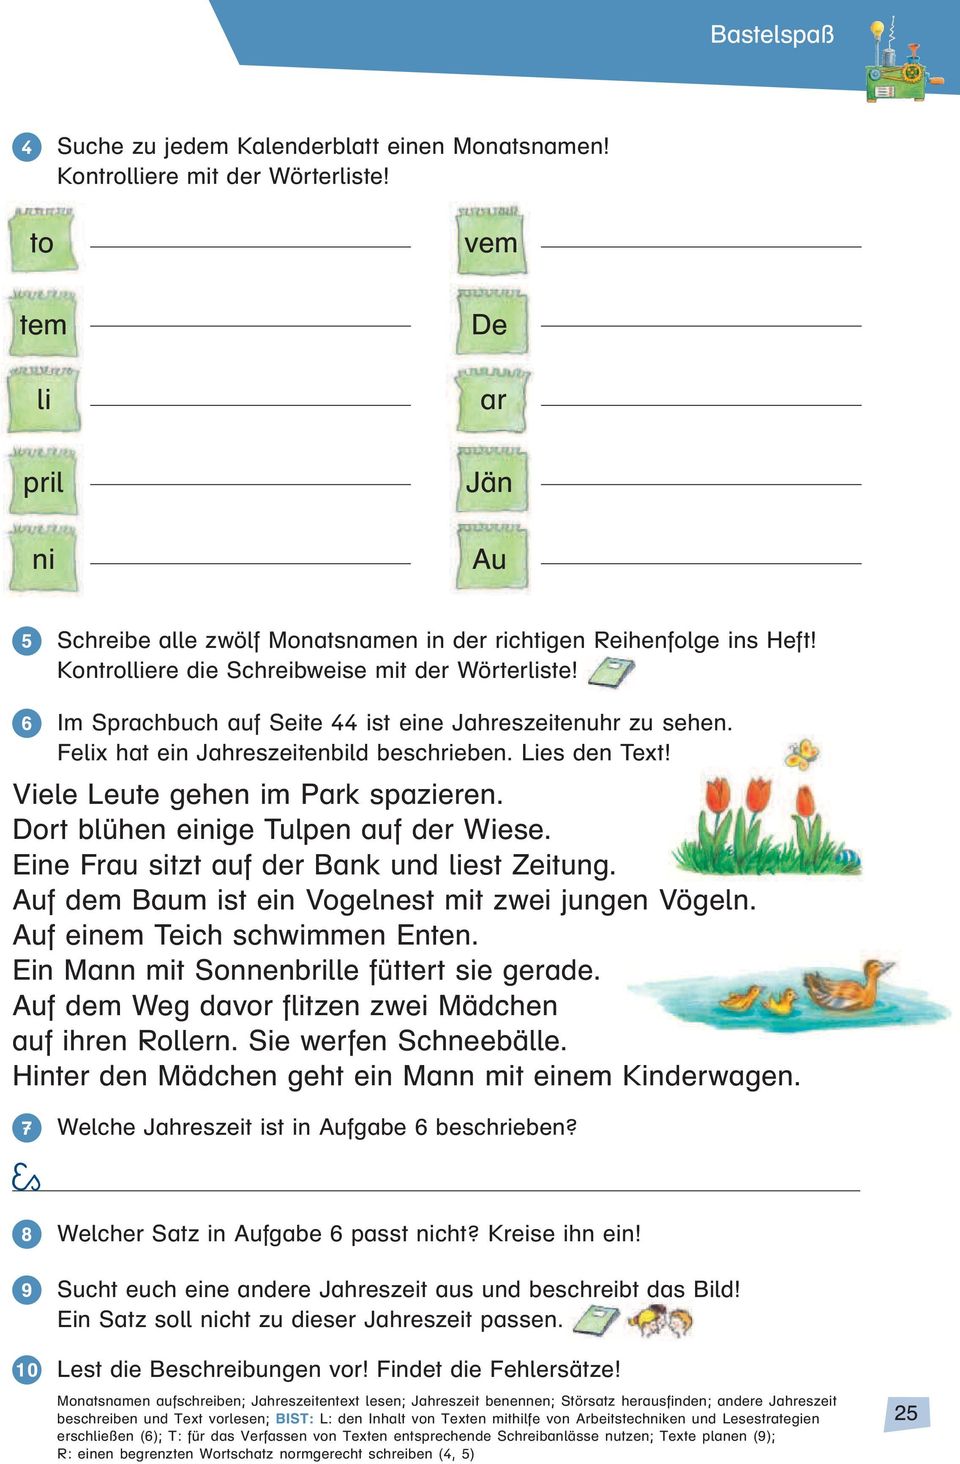 6 Im Sprachbuch auf Seite 44 ist eine Jahreszeitenuhr zu sehen. Felix hat ein Jahreszeitenbild beschrieben. Lies den Text! Viele Leute gehen im Park spazieren. Dort blühen einige Tulpen auf der Wiese.